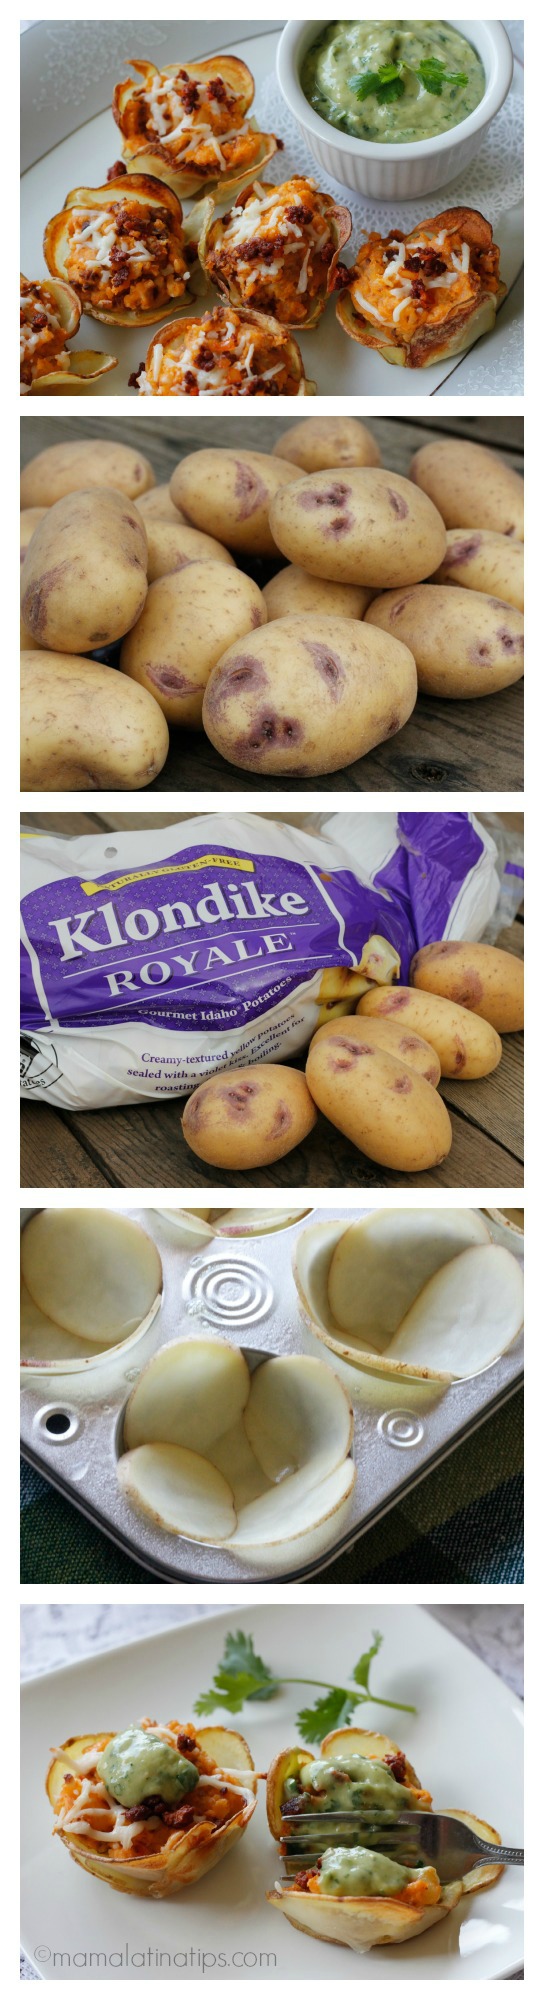 Klondike Royal potato baskets collage